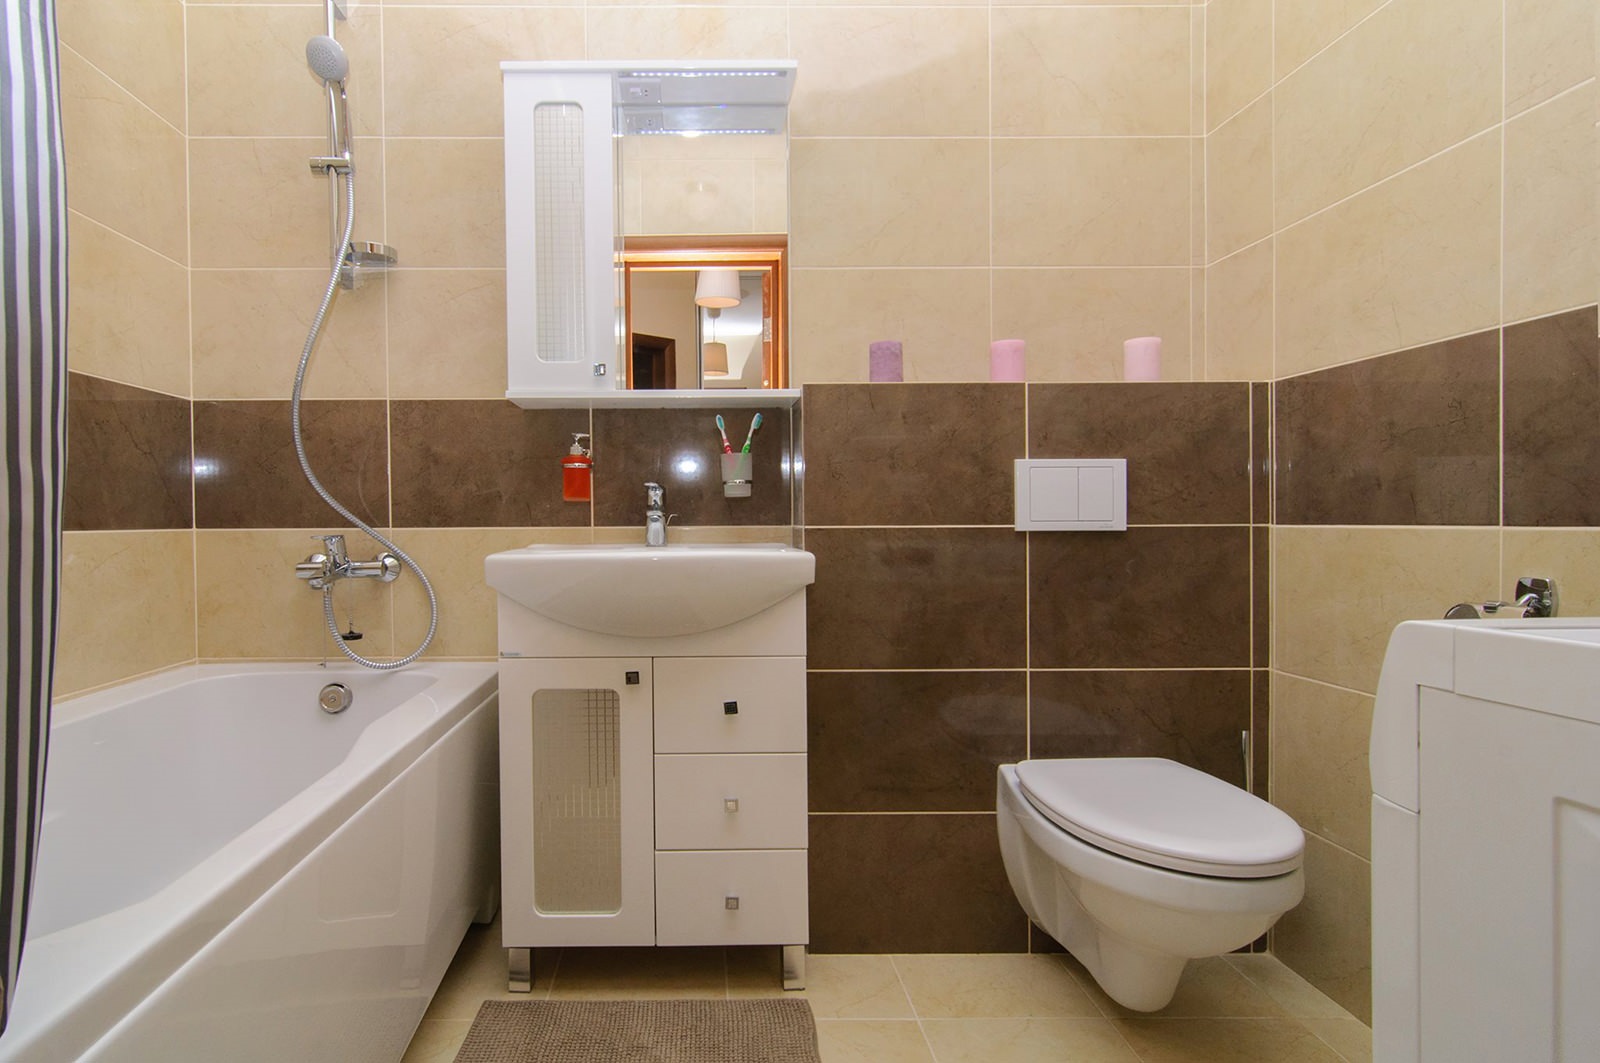 Un esempio di interni chiari per il bagno di colore beige